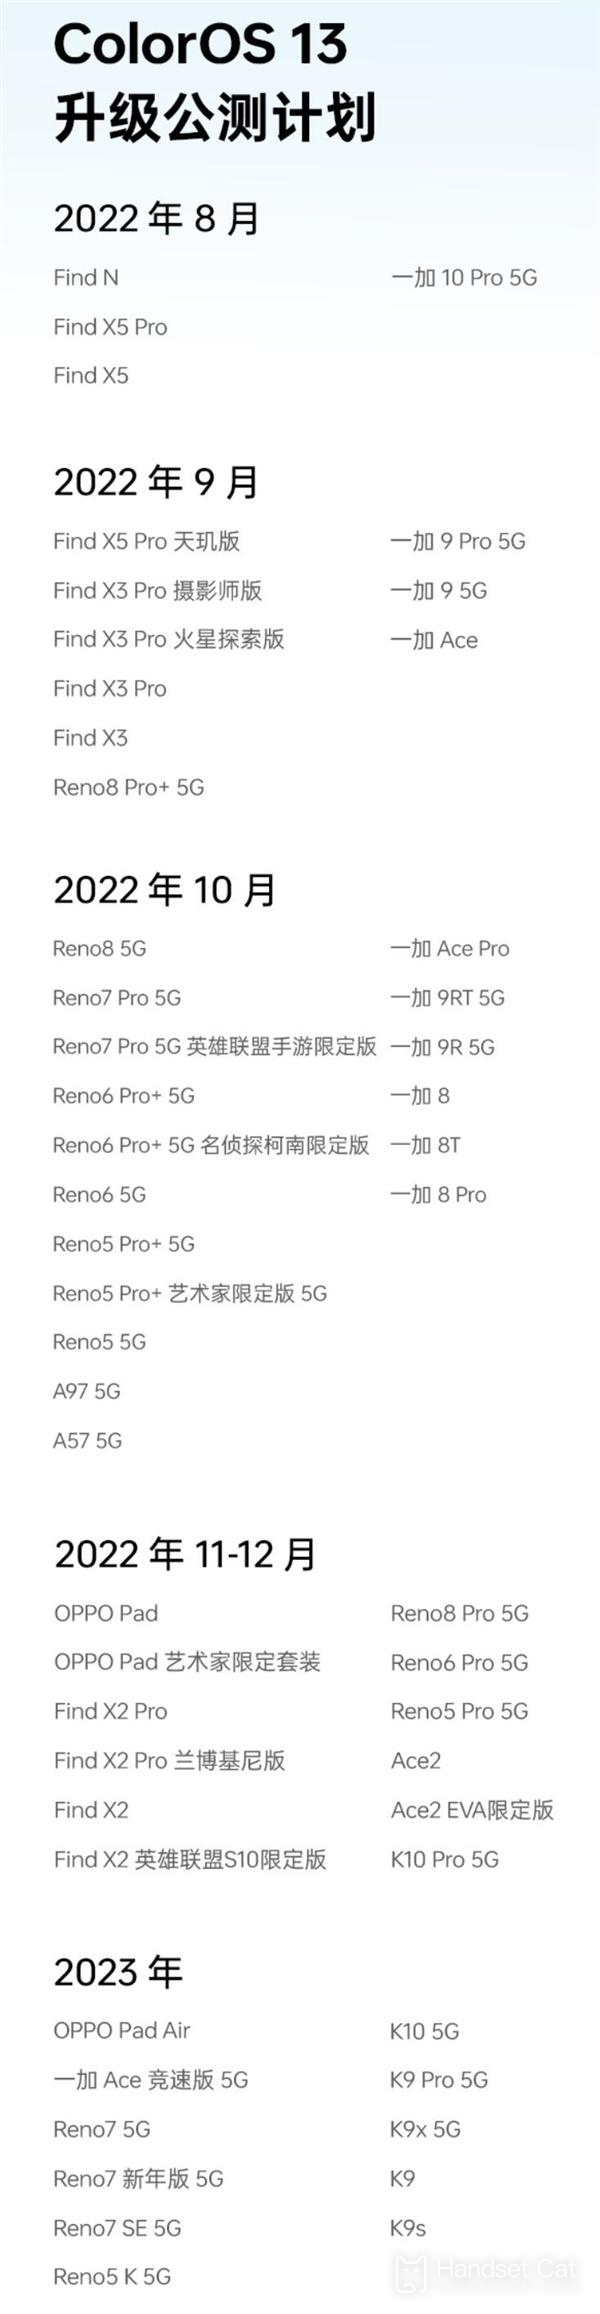 Cronograma do plano de atualização do ColorOS 13 lançado, modelos principais podem ser atualizados este mês